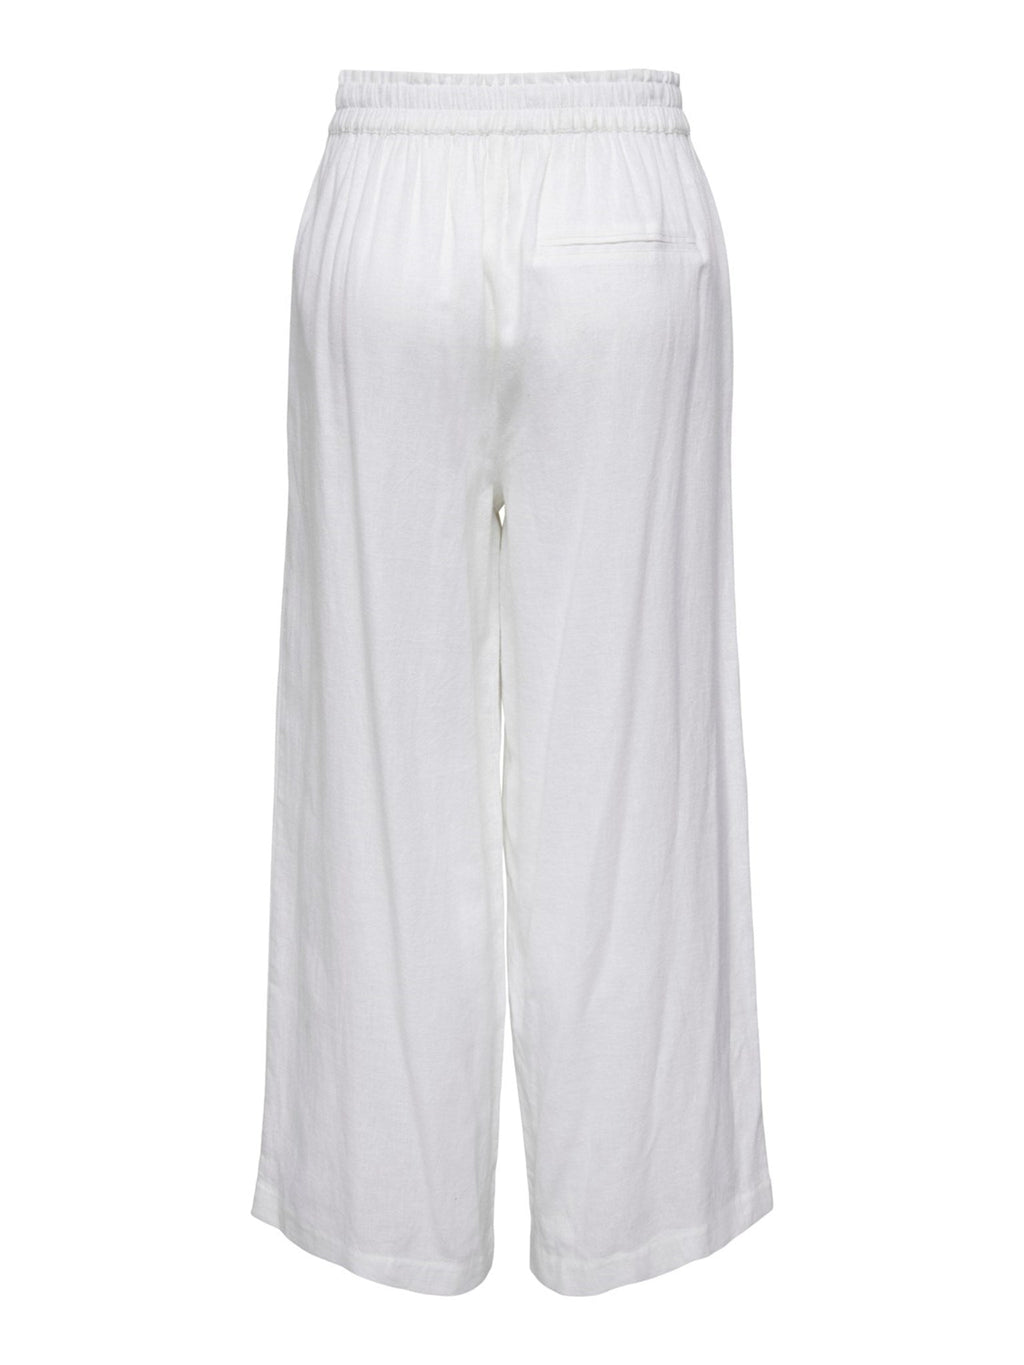 Tokijske lanene hlače - svijetlo bijele boje